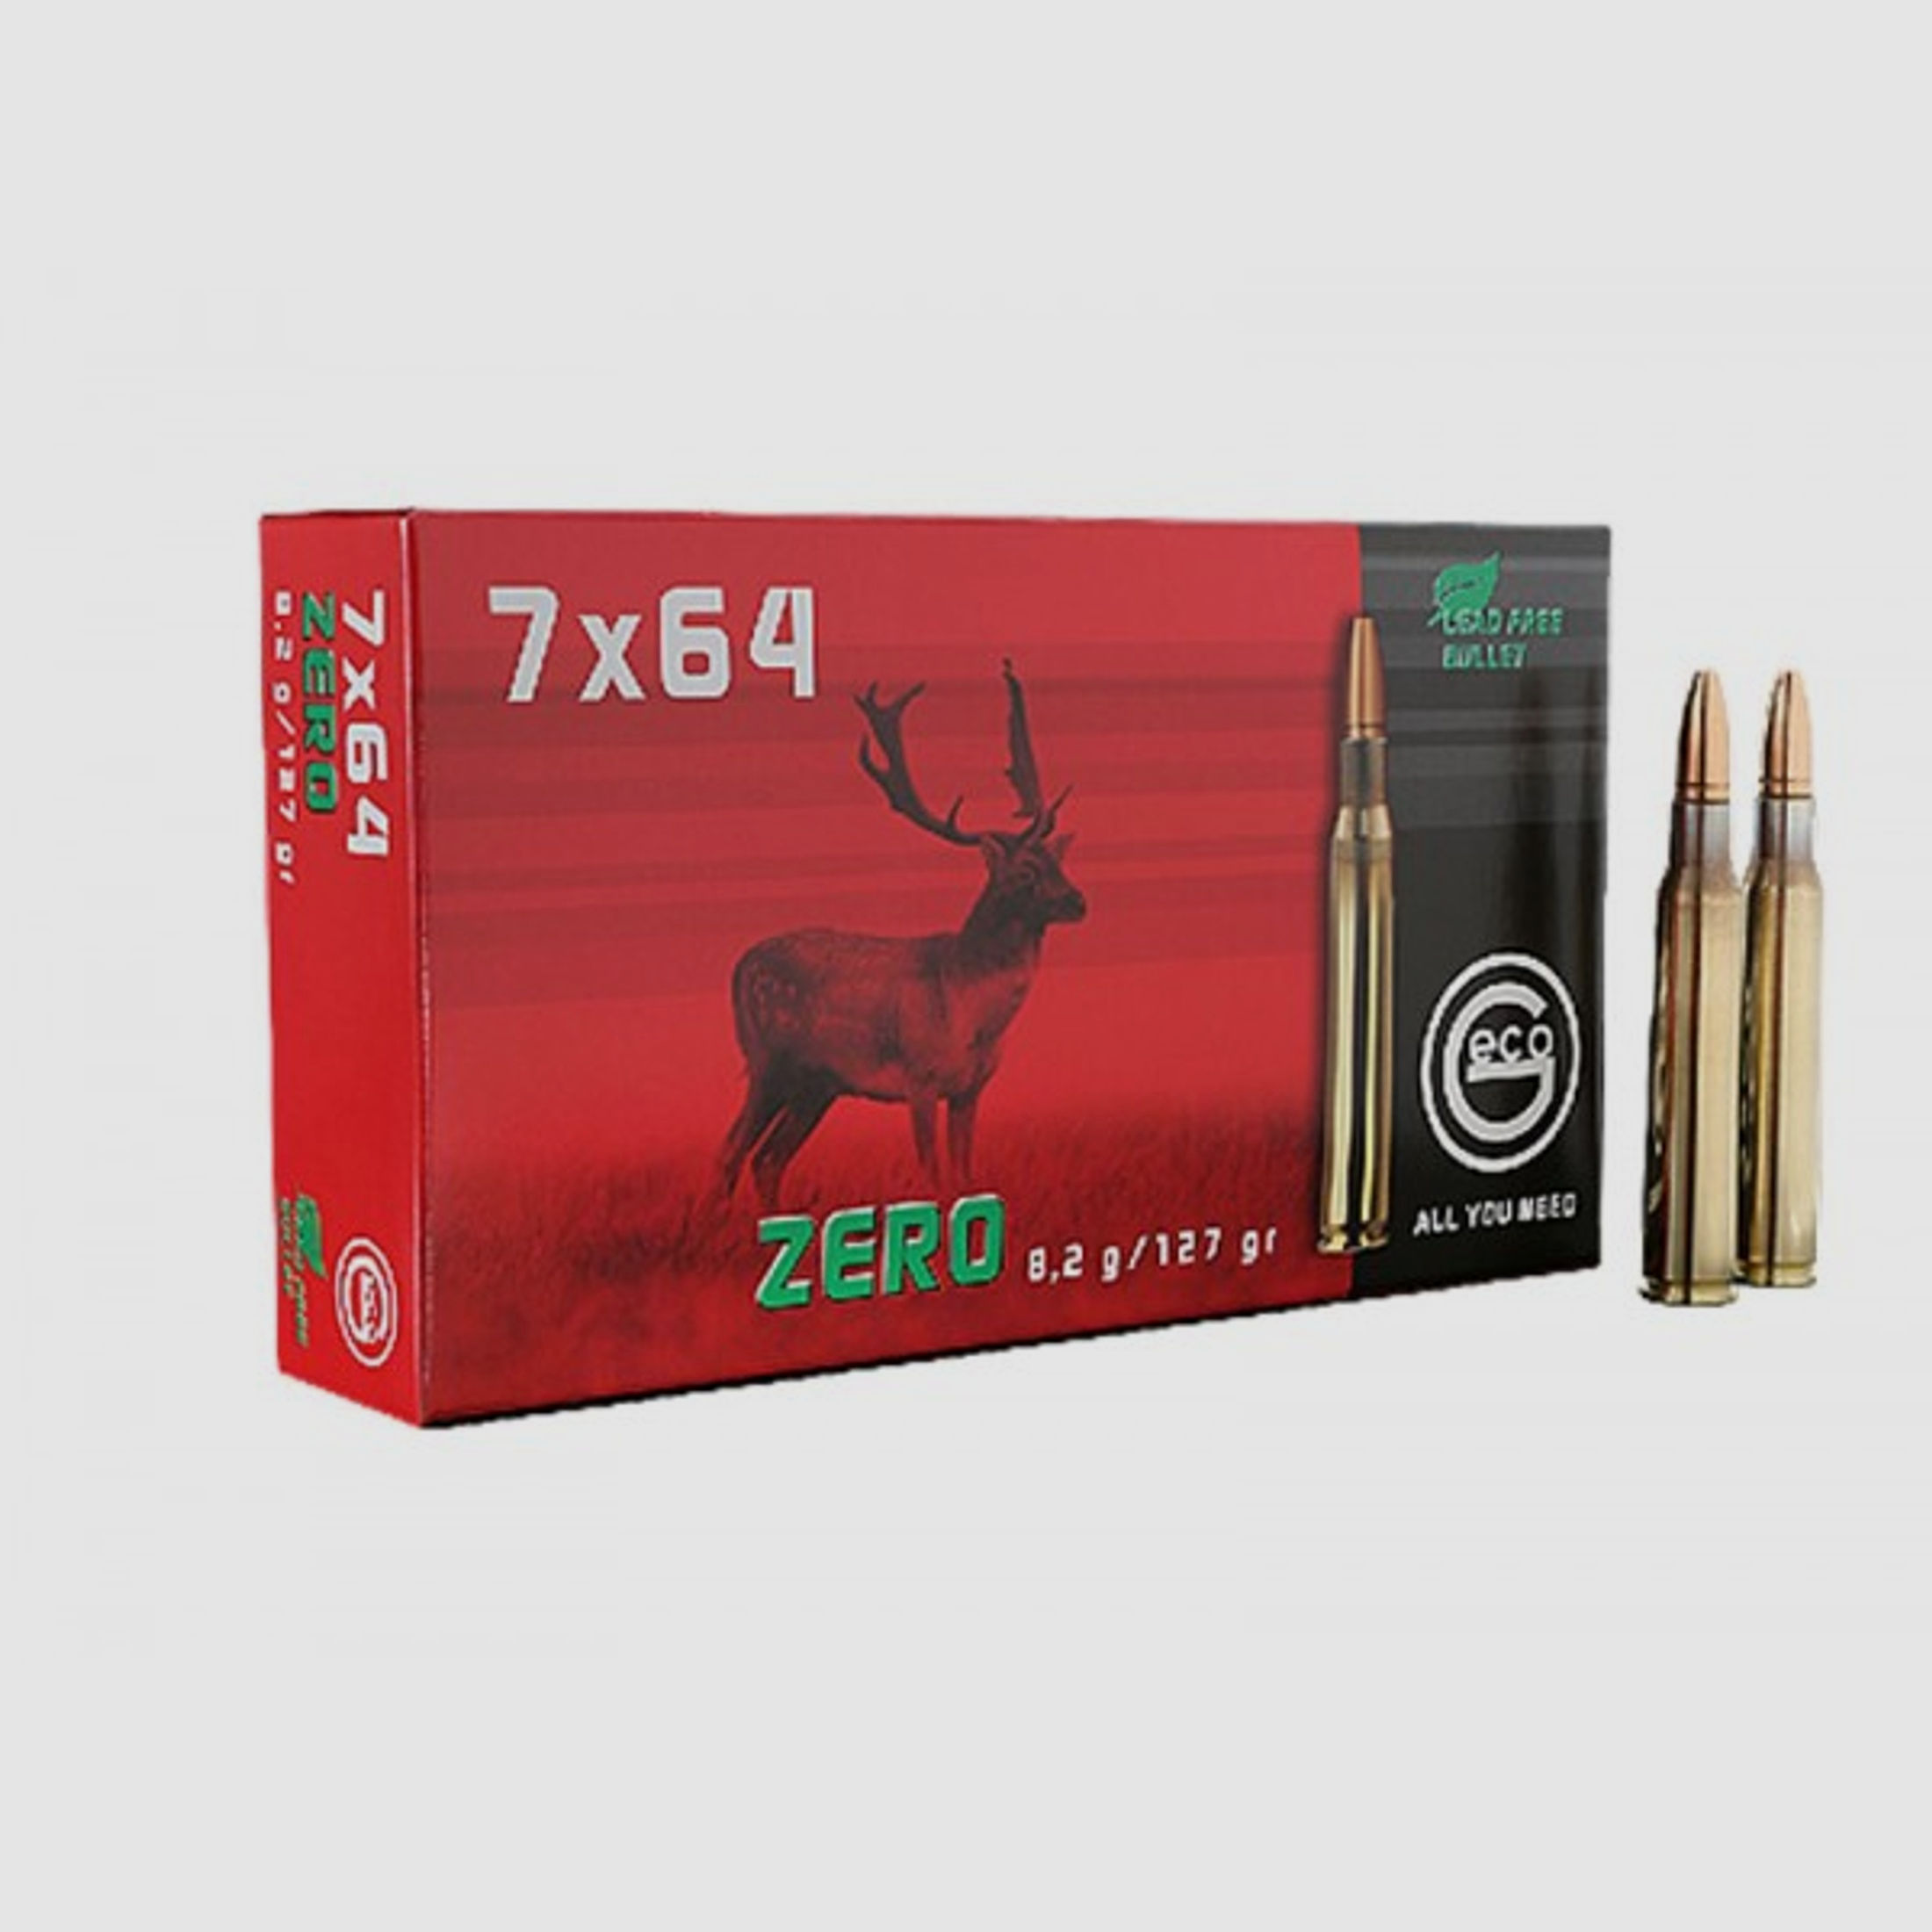 GECO ZERO 7X64 bleifrei Munition 8,2 gr.